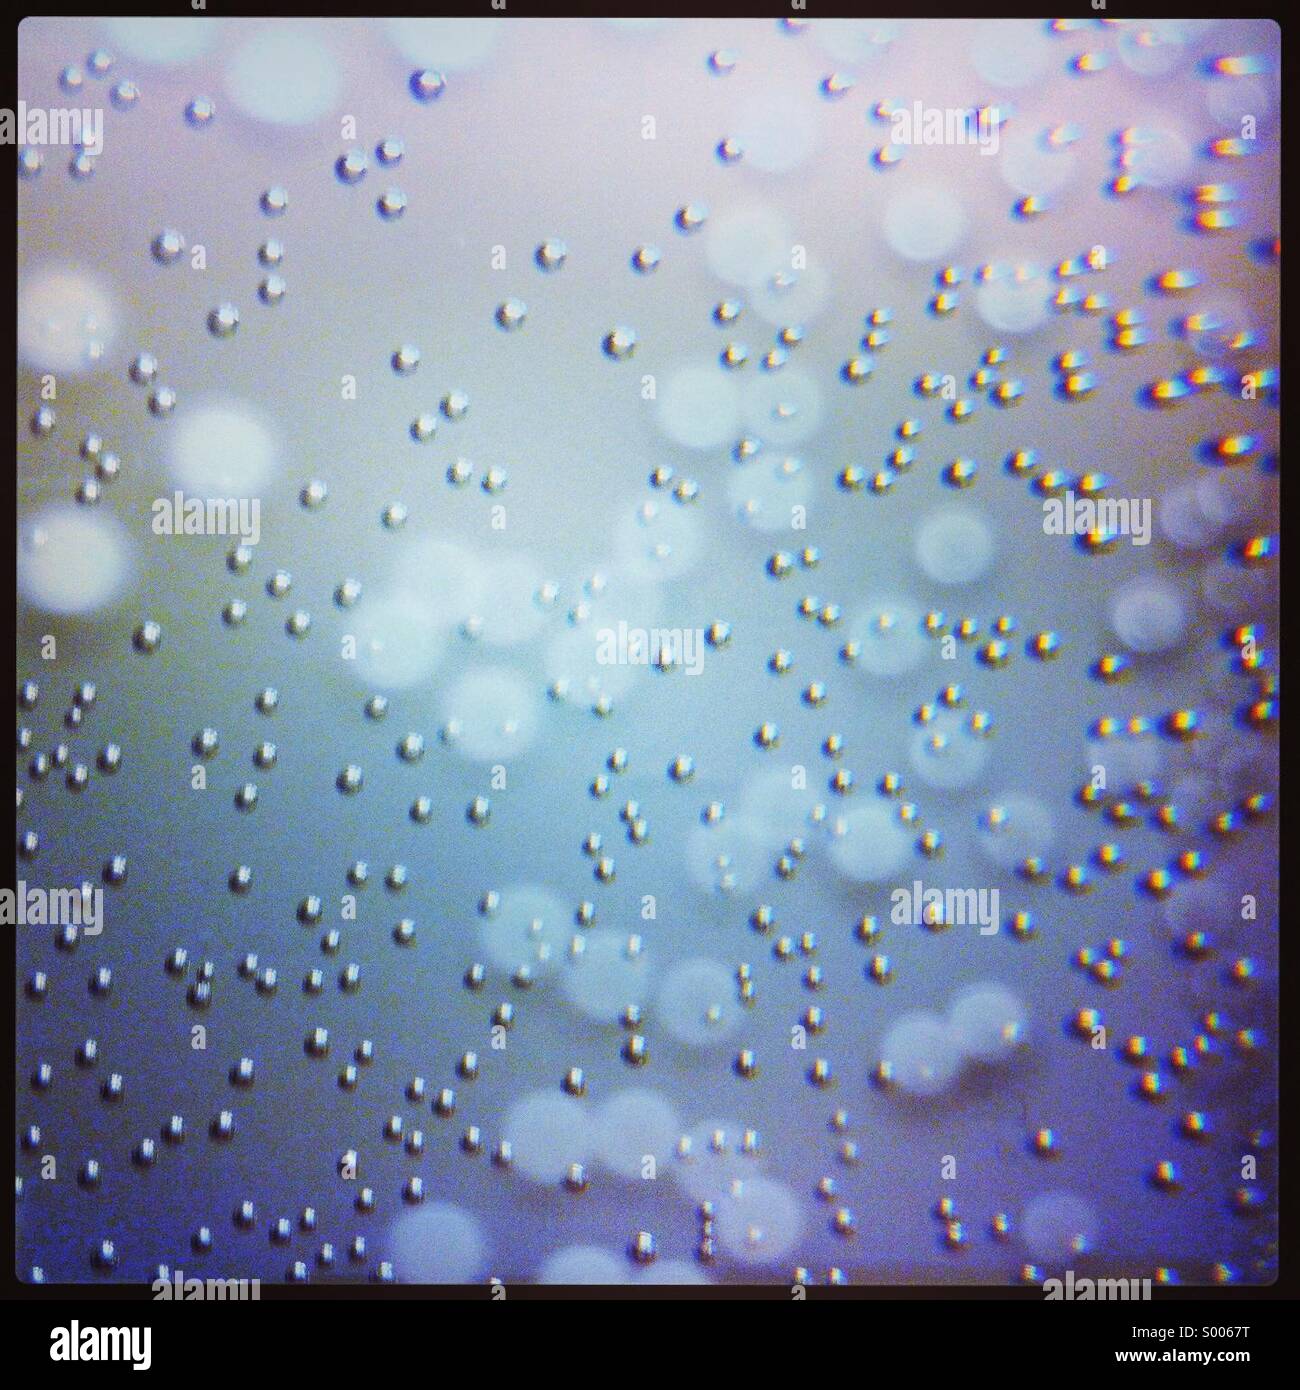 Luftblasen in einem Glas Wasser Stockfoto